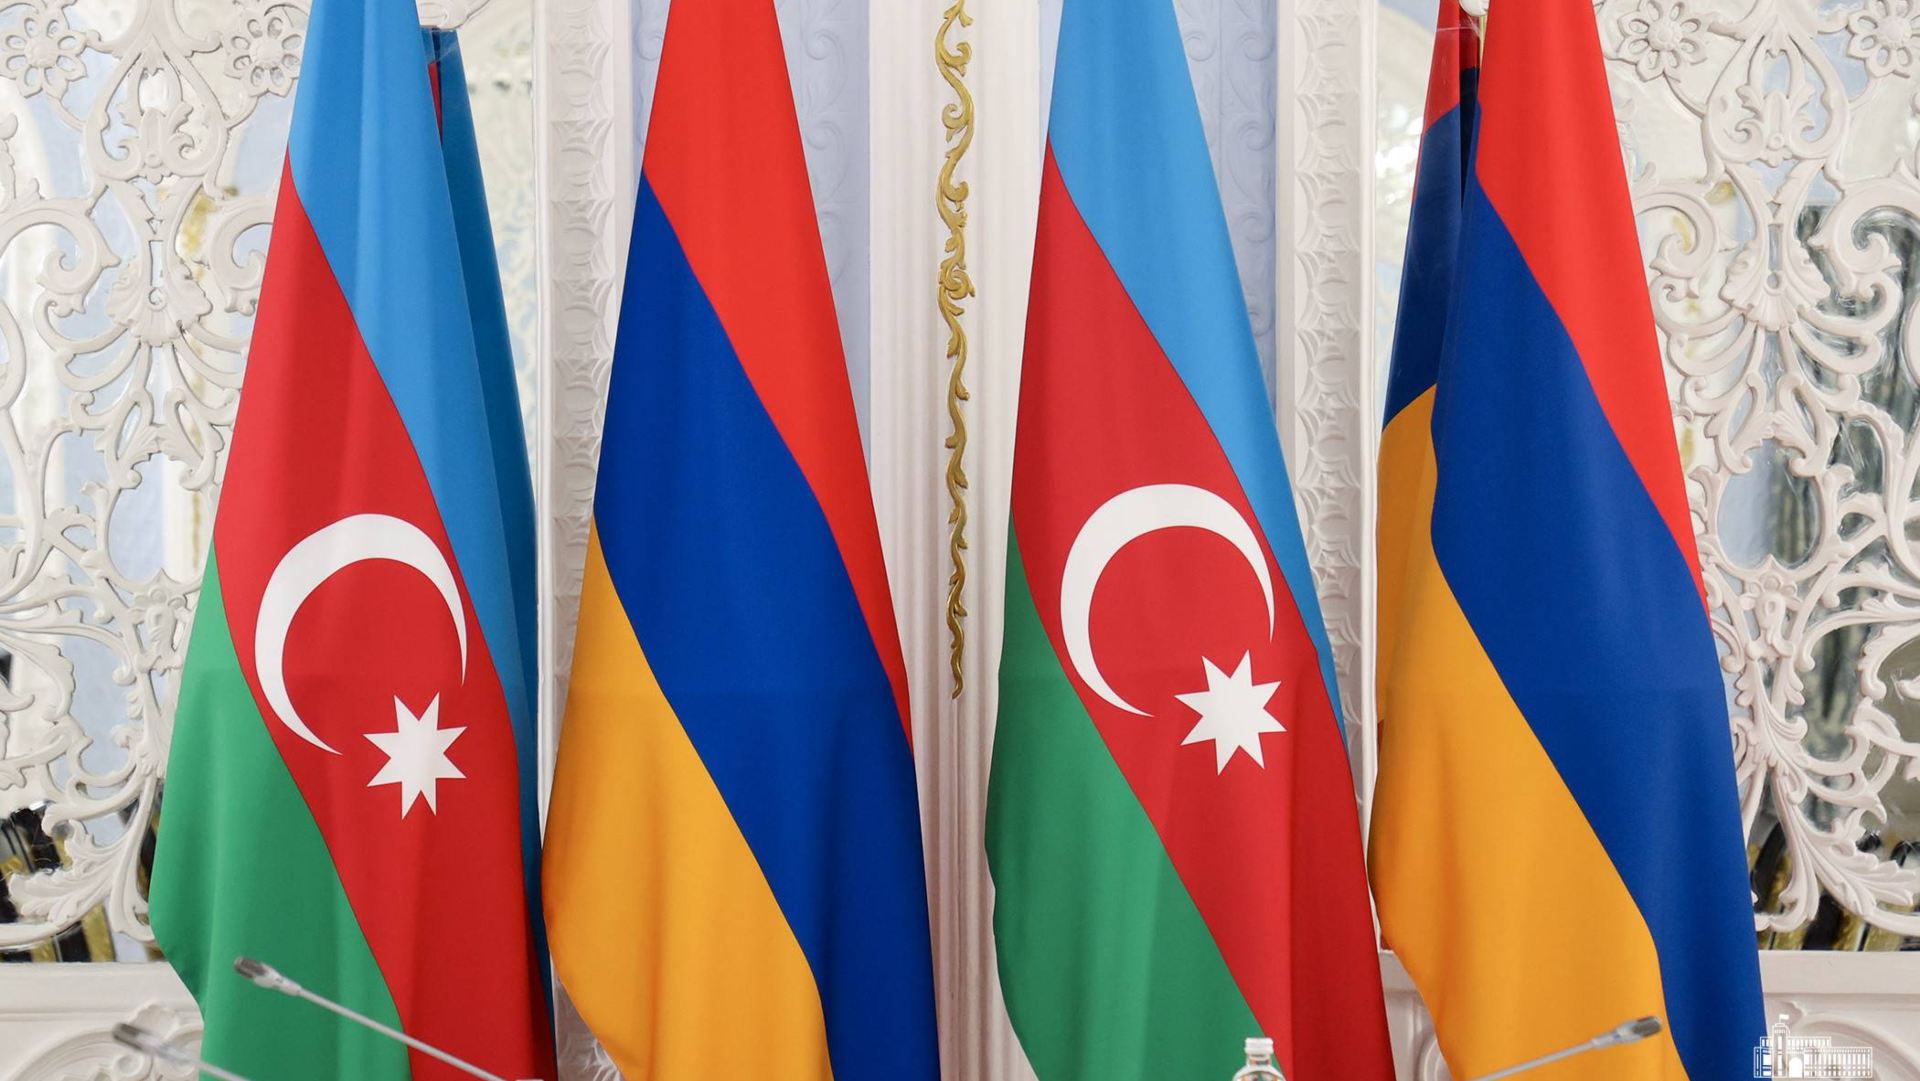 Հայաստանը ստացել է խաղաղության պայմանագրի վերաբերյալ Ադրբեջանի առաջարկների 10-րդ փաթեթը